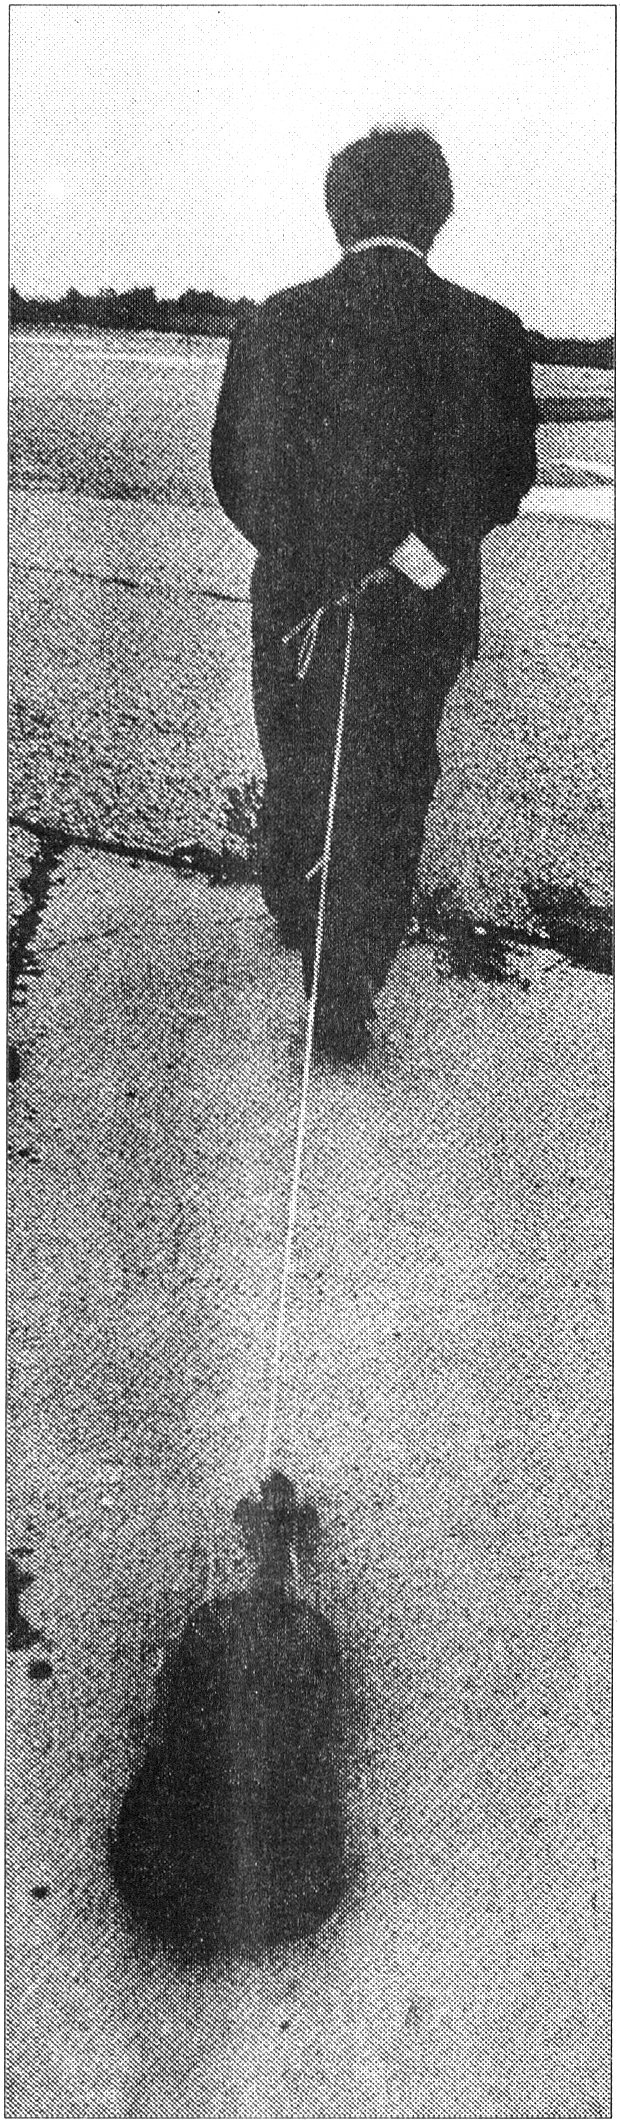 1975년‘백남준에게 끌려가는 바이올린’

동아일보 자료사진